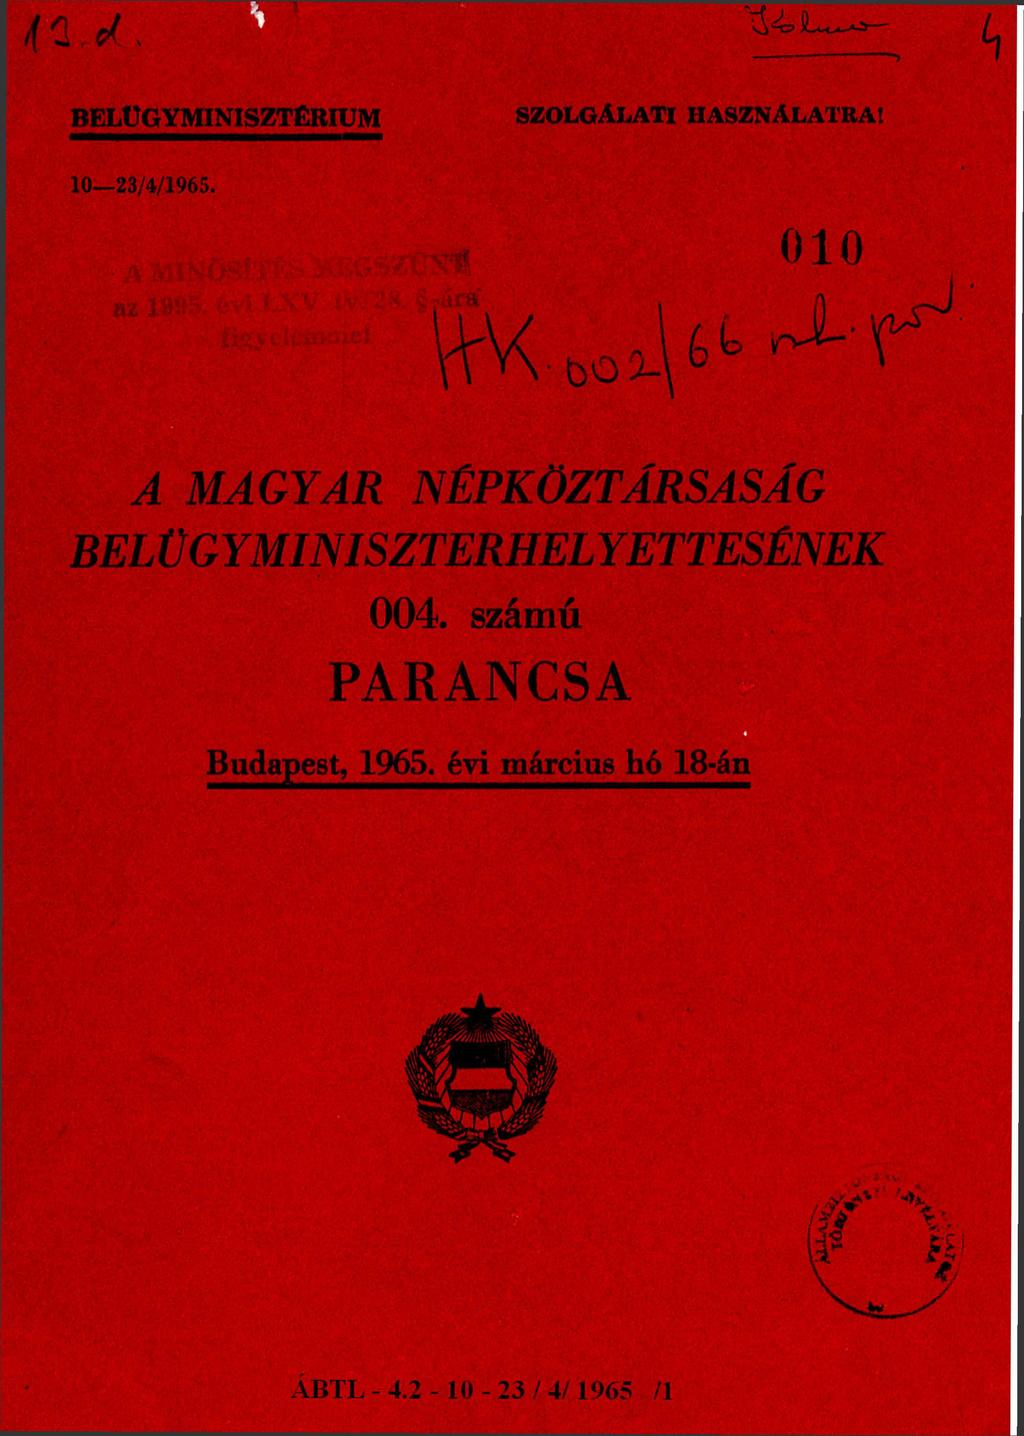 BELÜGYMINISZTÉRIUM SZOLGÁLATI HASZNÁLATRA! 10-23/4/1965.